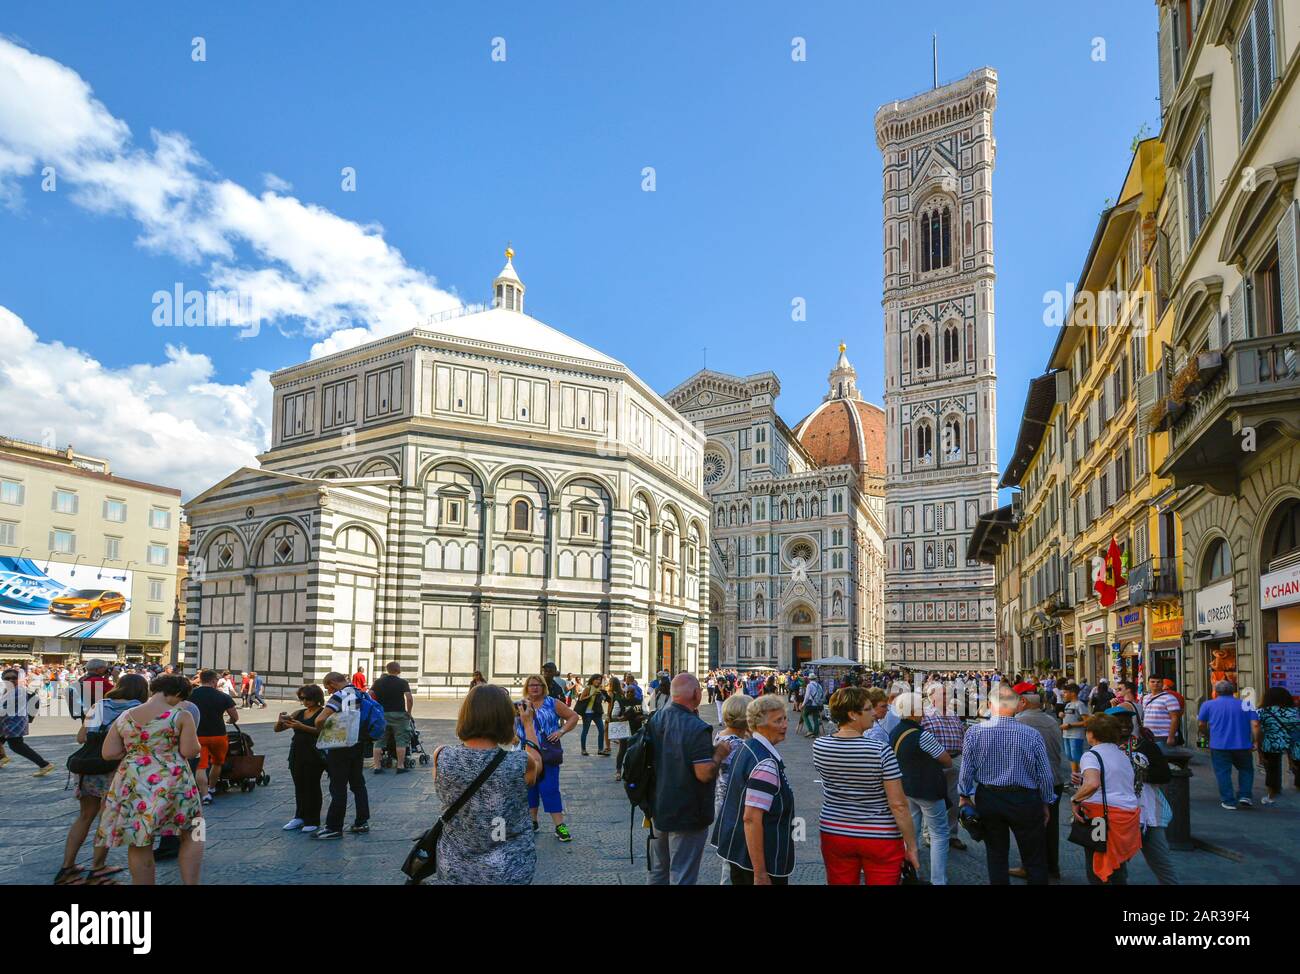 La catedral o el duomo de Florencia junto con el Baptisterio y el Campanile de Giotto con turistas en la piazza en un día soleado y lleno de gente en la Toscana. Foto de stock